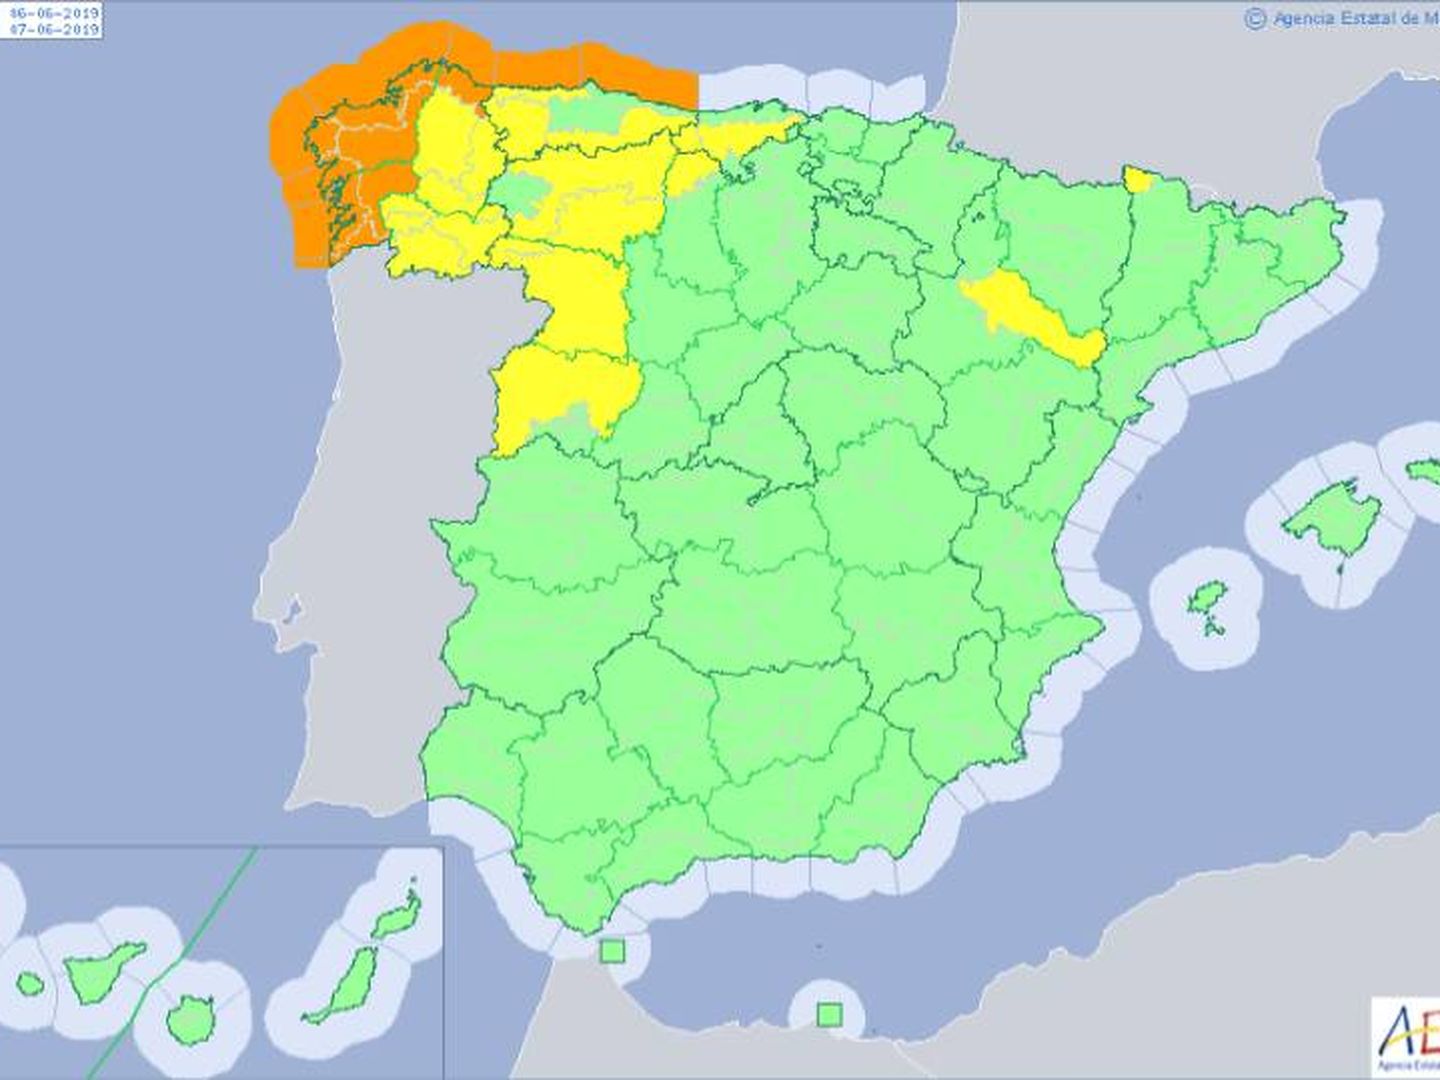 Mapa de España con la predicción de AEMET con las zonas en riesgo importante (naranja), riesgo (amarillo) y sin riesgo (verde)